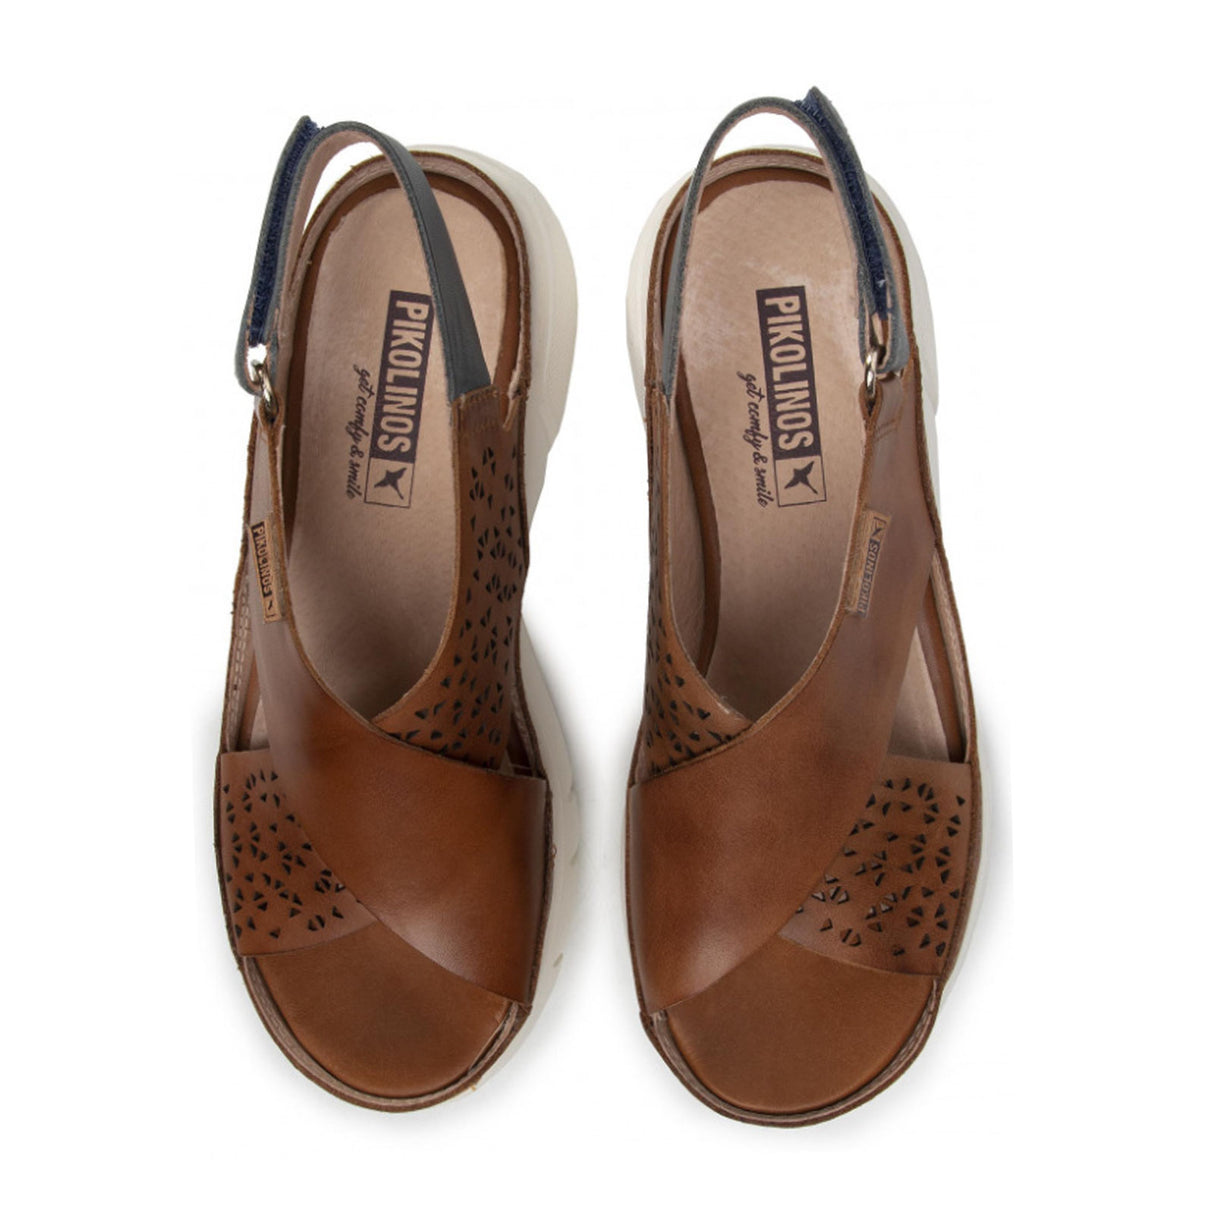 Pikolinos Petra W0C-0500C1 (Women) - Brandy Sandals - Backstrap - The Heel Shoe Fitters